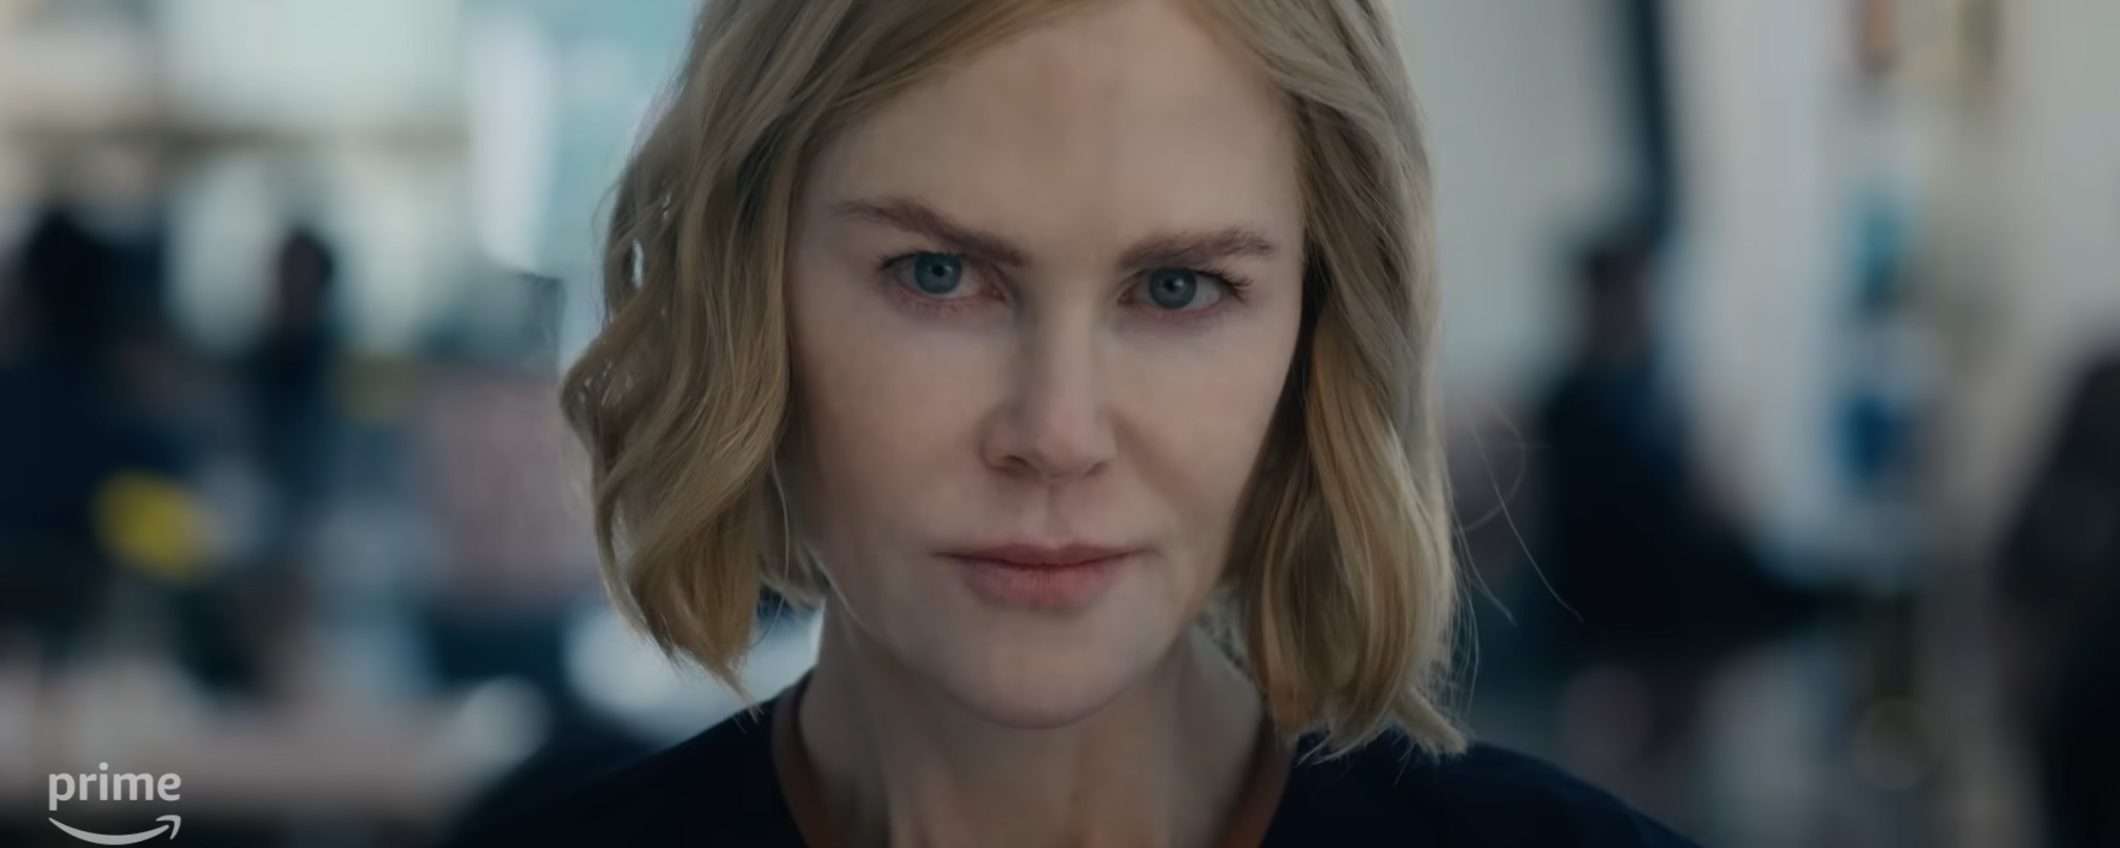 Dove vedere in streaming Expats, la nuova serie con Nicole Kidman